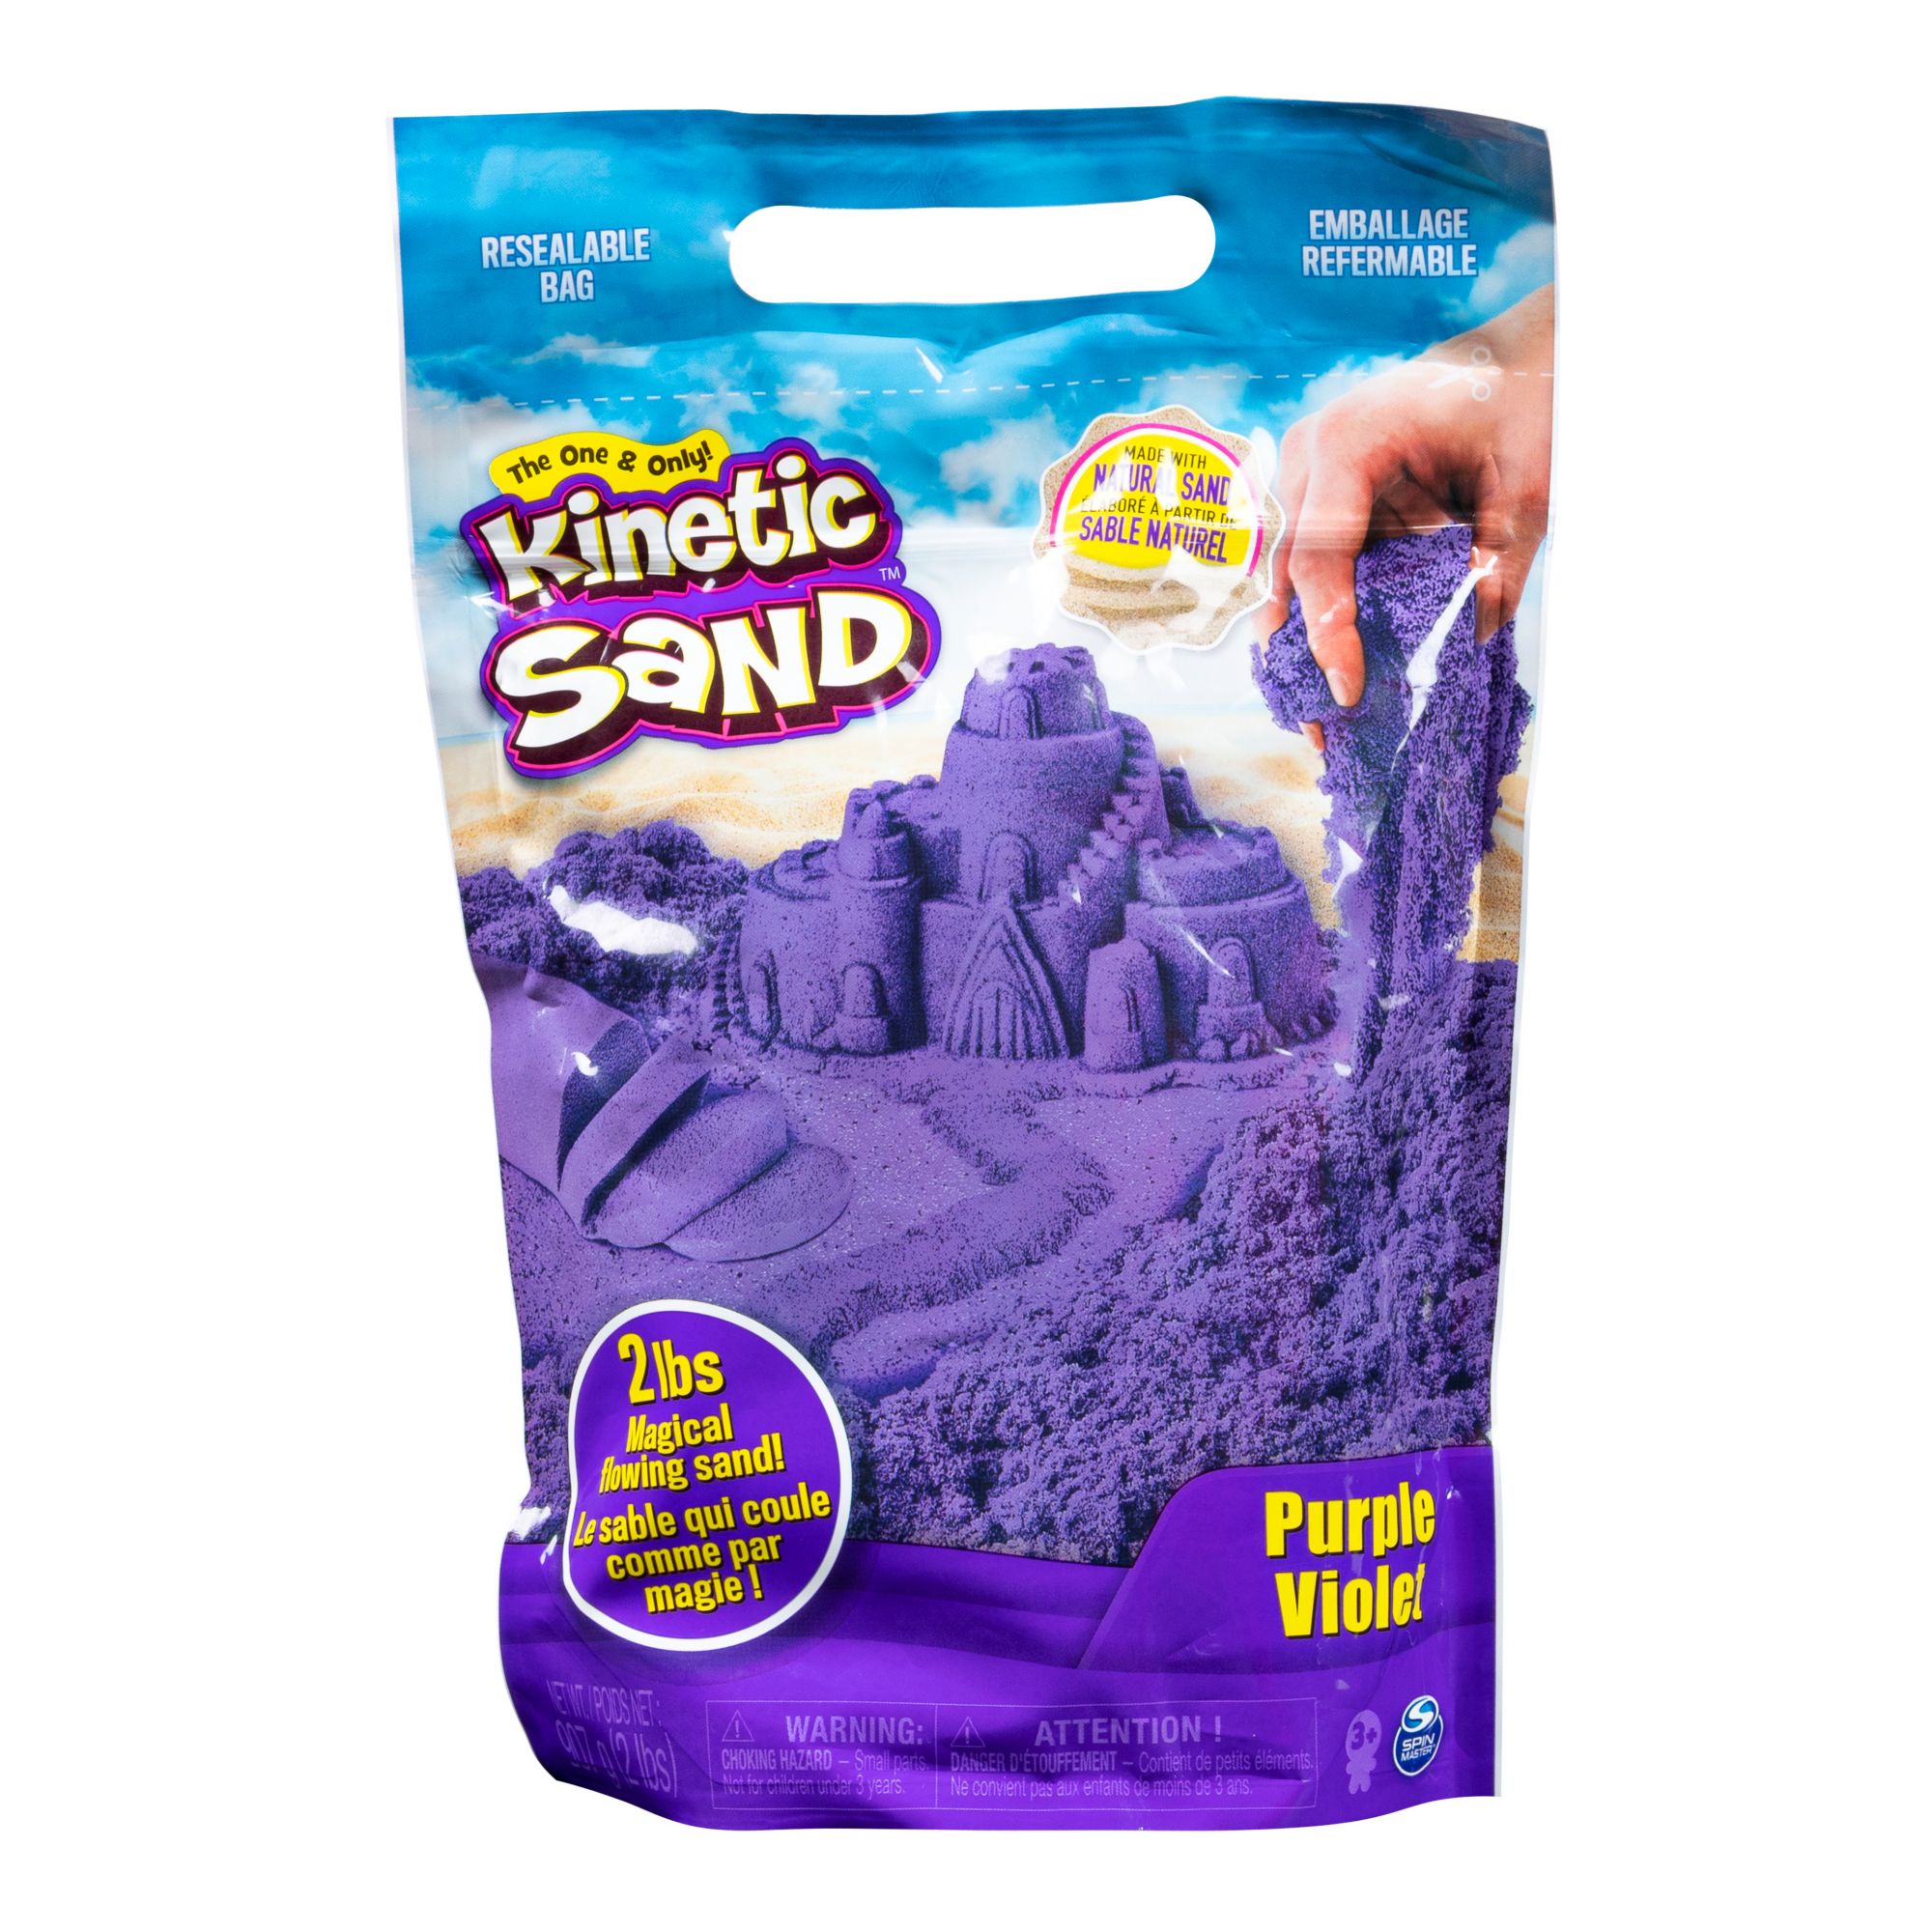 Kinetic Sand The Original Moldable Sensory Play Sand Toys For Kids, 2 lbs. Resealable Bag - Purple